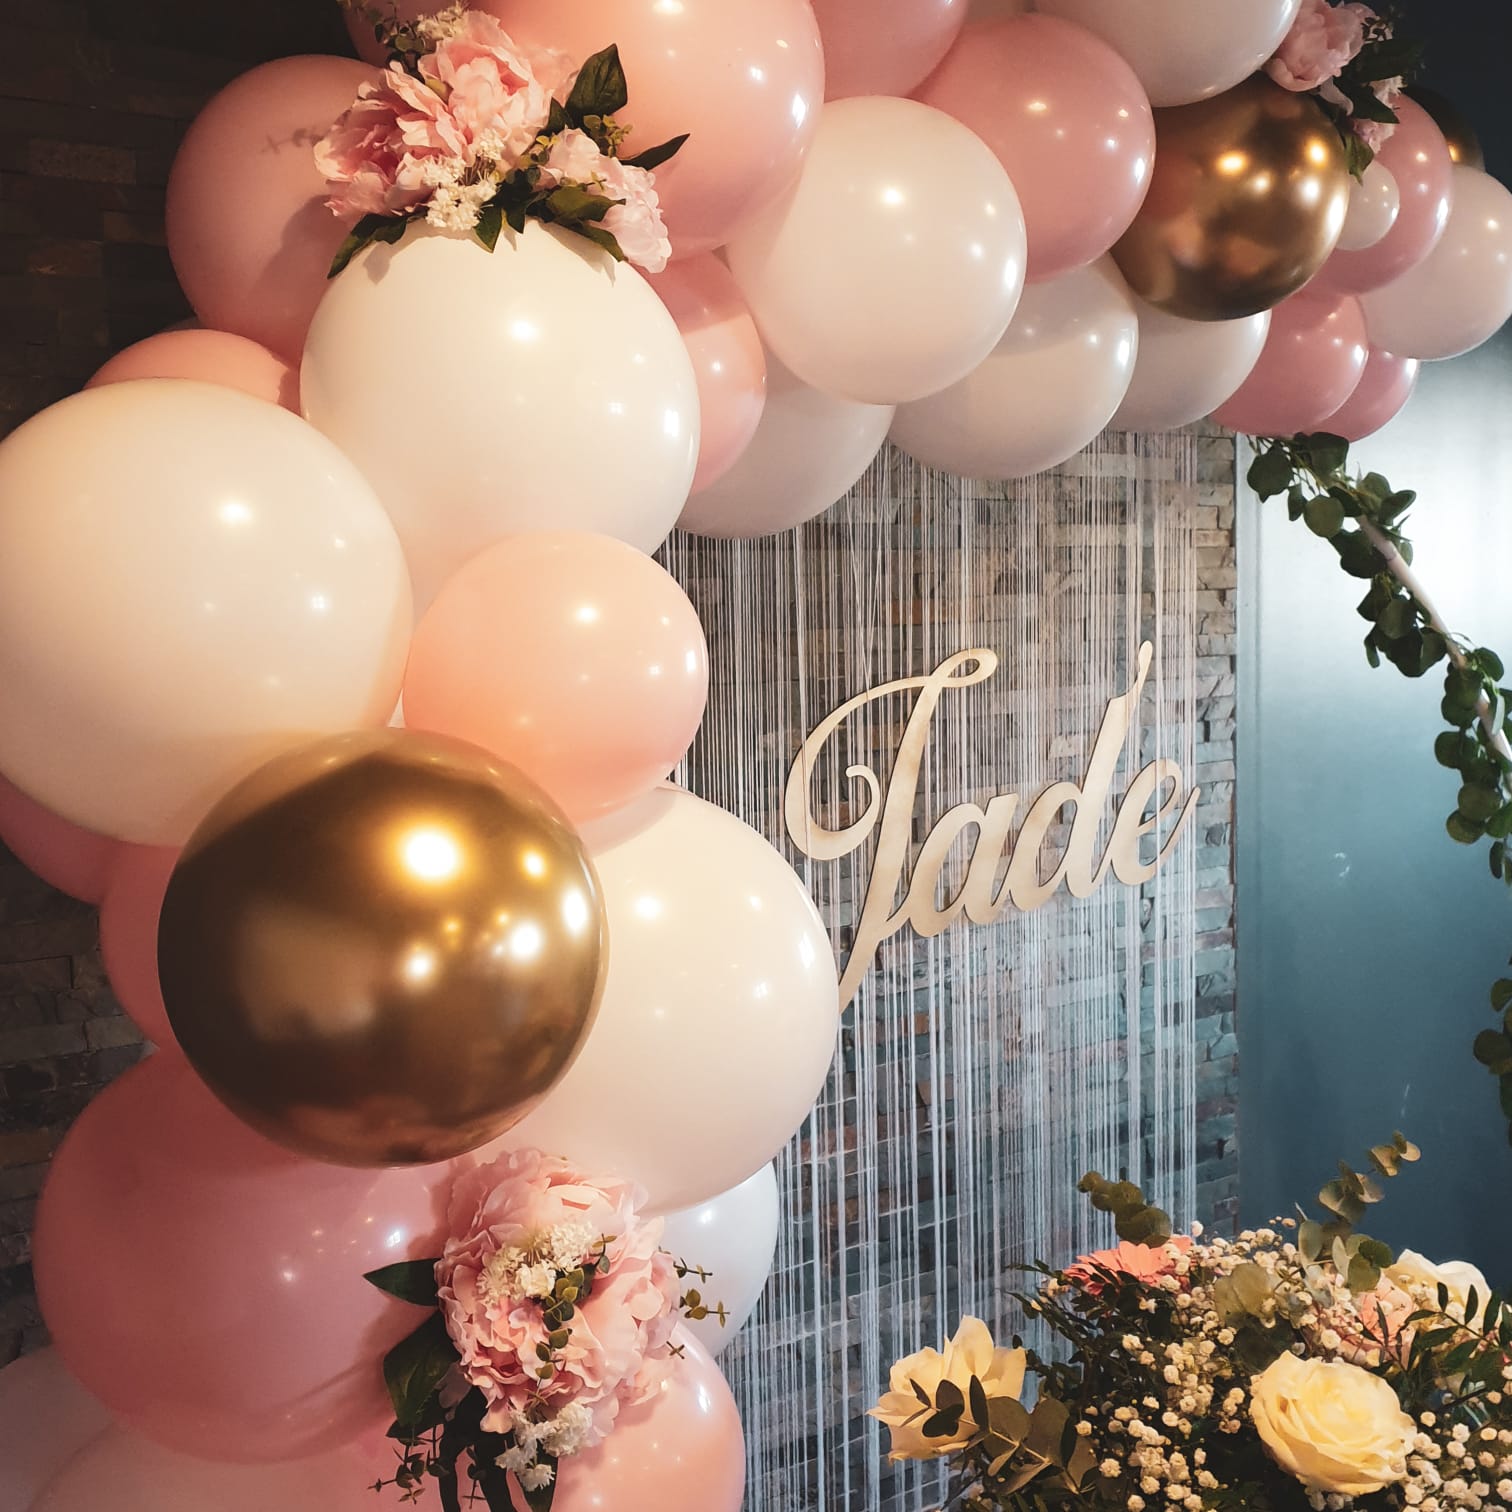 Composition ballon Montgolfière avec ballon transparent, mini-ballons,  arrangement fleurs